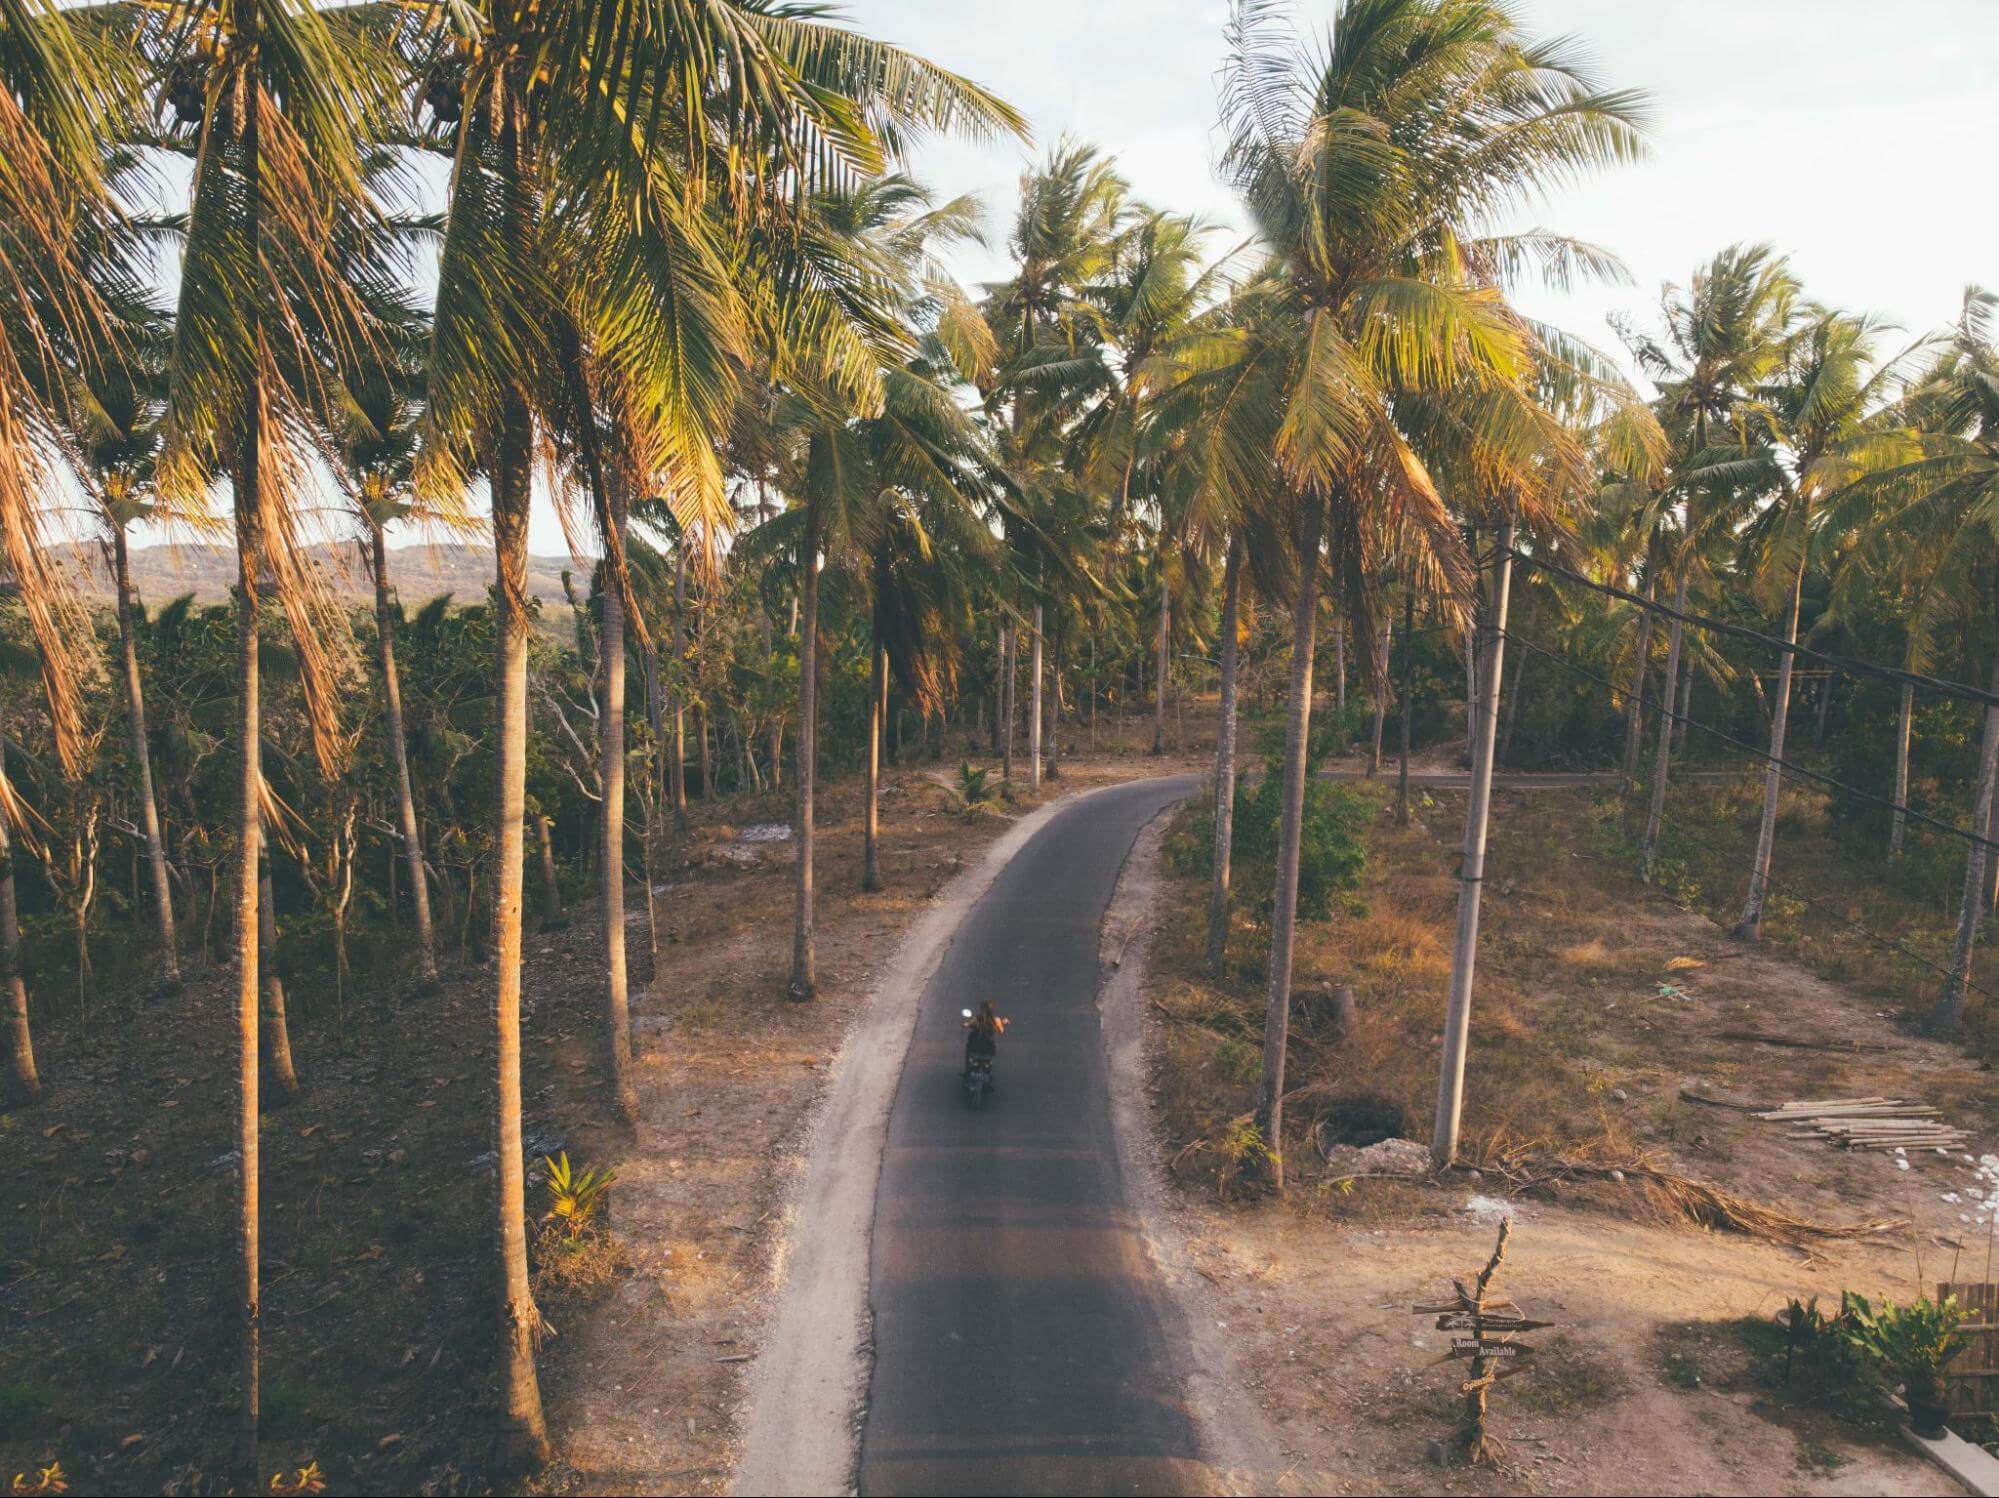 uma estrada simples e curva está perpassando coqueiros, aparentemente em uma região de praia, com um chão de areia. Nesse caminho, uma pessoa está andando em sua moto de viagem